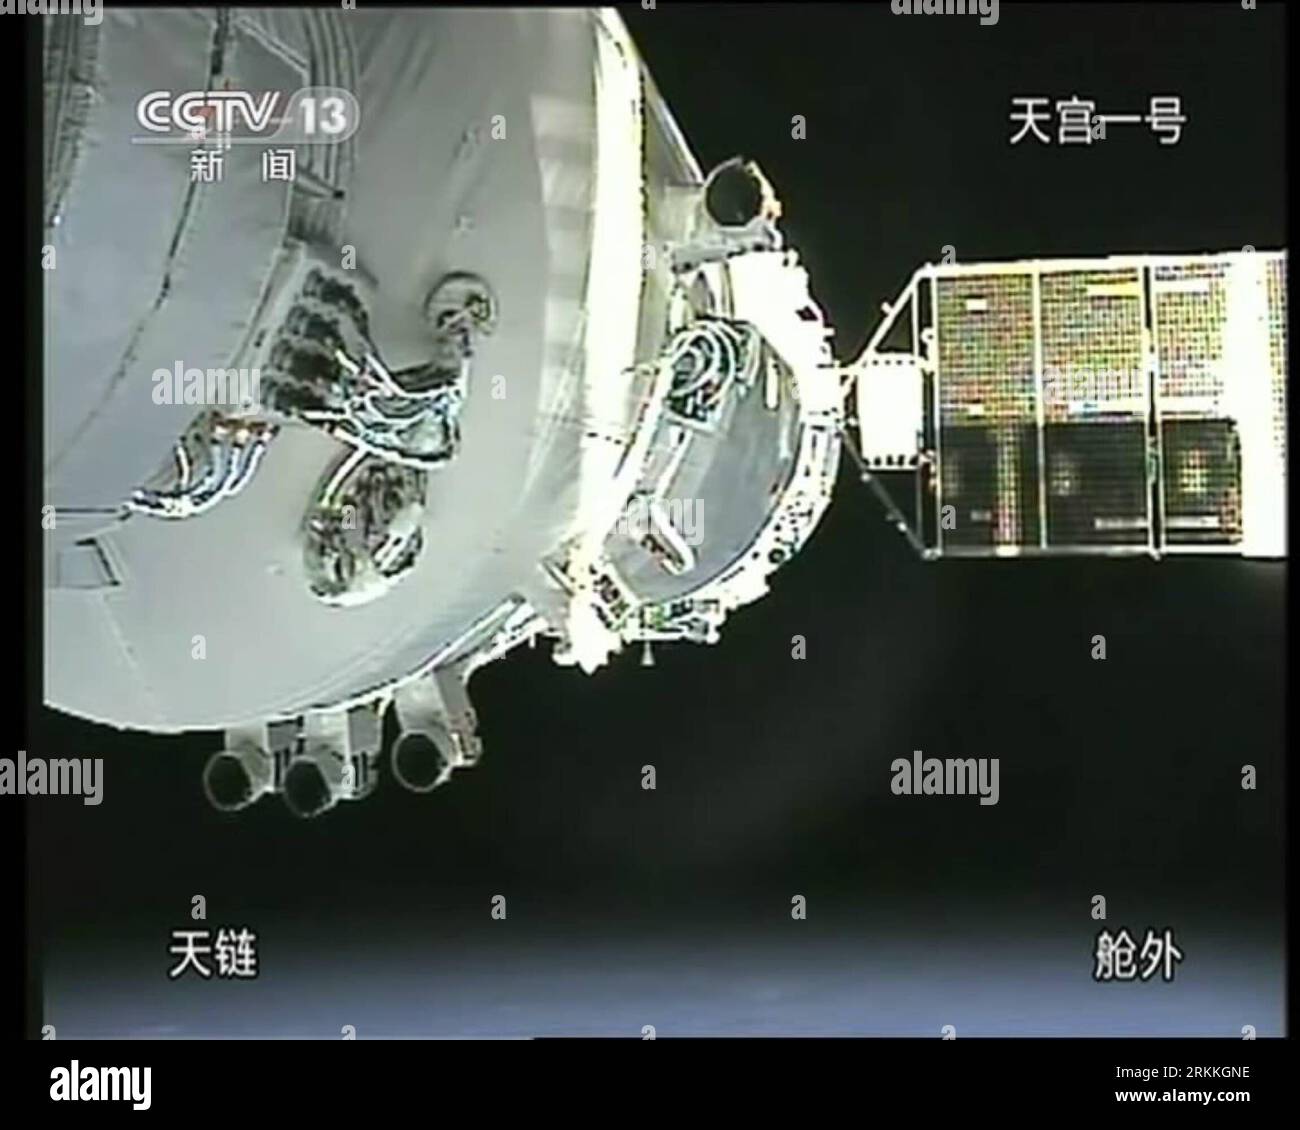 Bildnummer : 56241473 Datum : 02.11.2011 Copyright : imago/Xinhua (111103) -- PÉKIN, 3 novembre 2011 (Xinhua) -- Une capture vidéo prise à la télévision centrale de Chine le 3 novembre 2011 montre le vaisseau spatial Shenzhou-8 amarré avec le module de laboratoire spatial Tiangong-1. Vaisseau spatial sans pilote Shenzhou-8 amarré avec le module de laboratoire spatial Tiangong-1 tôt jeudi, selon le Centre de contrôle aérospatial de Beijing. (Xinhua) (ljh) (TIANGONG-1&SHENZHOU-8 DOCKING)CHINA-TIANGONG-1 -SHENZHOU-8 -DOCKING (CN) PUBLICATIONxNOTxINxCHN Gesellschaft Raumfahrt Andocken Andockmanöver x0x xst 2011 quadrat 56241473 Date 02 11 2 Banque D'Images